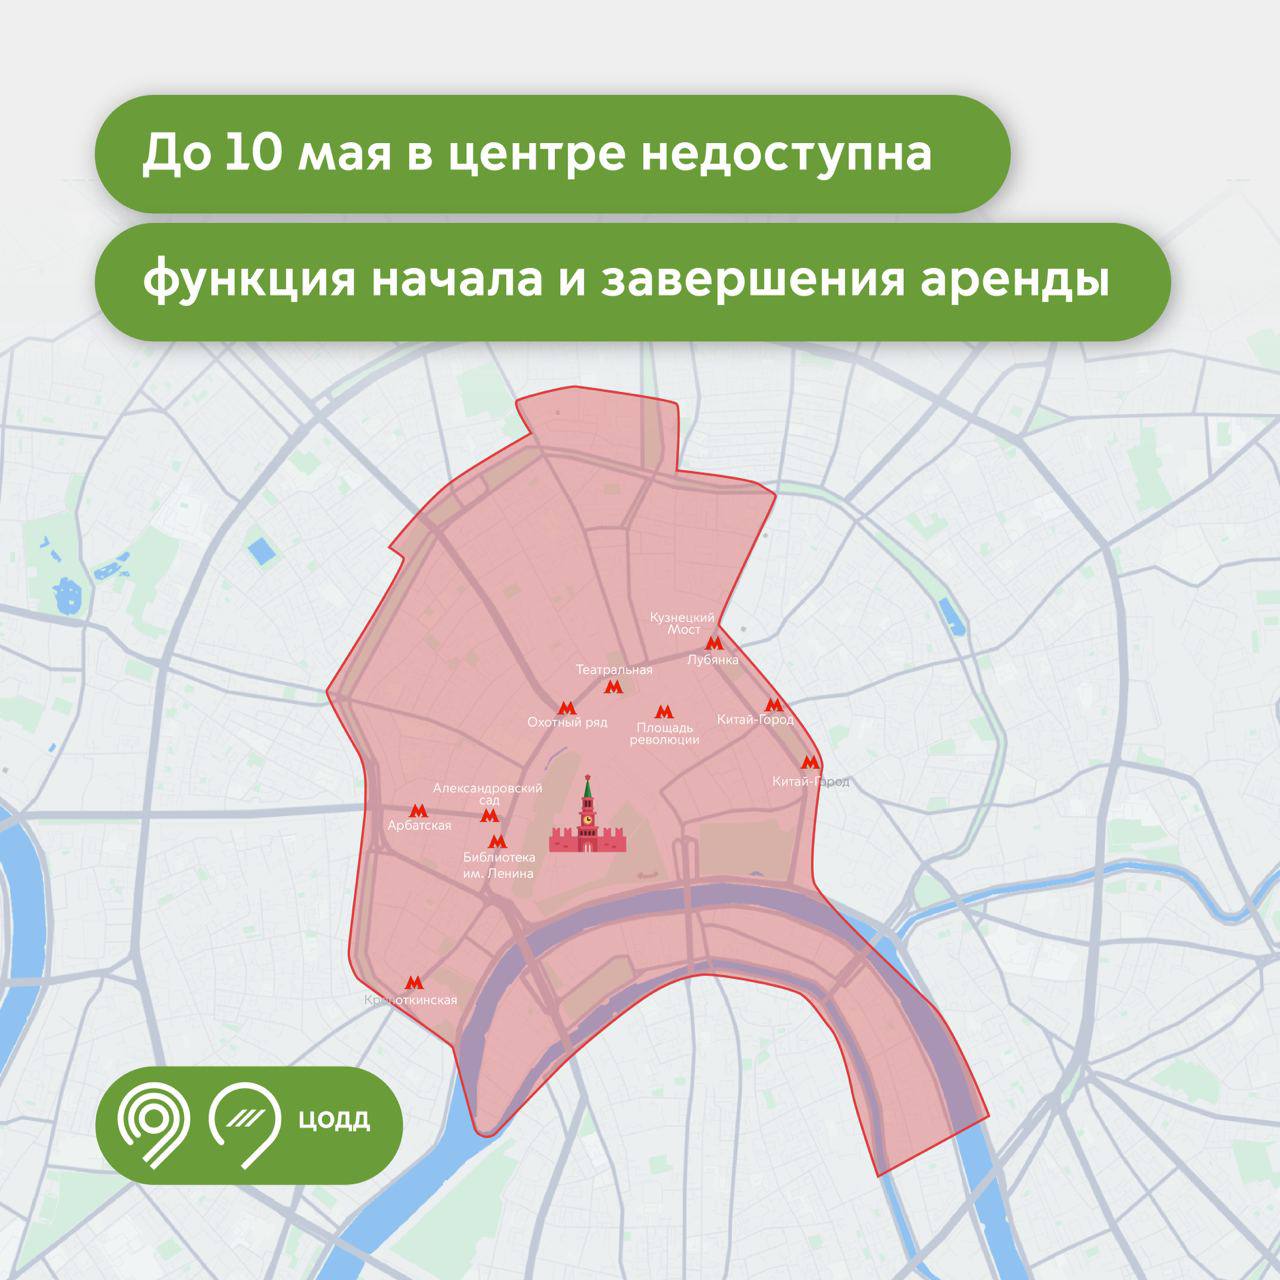 В центре Москвы до 10 мая не будет работать каршеринг